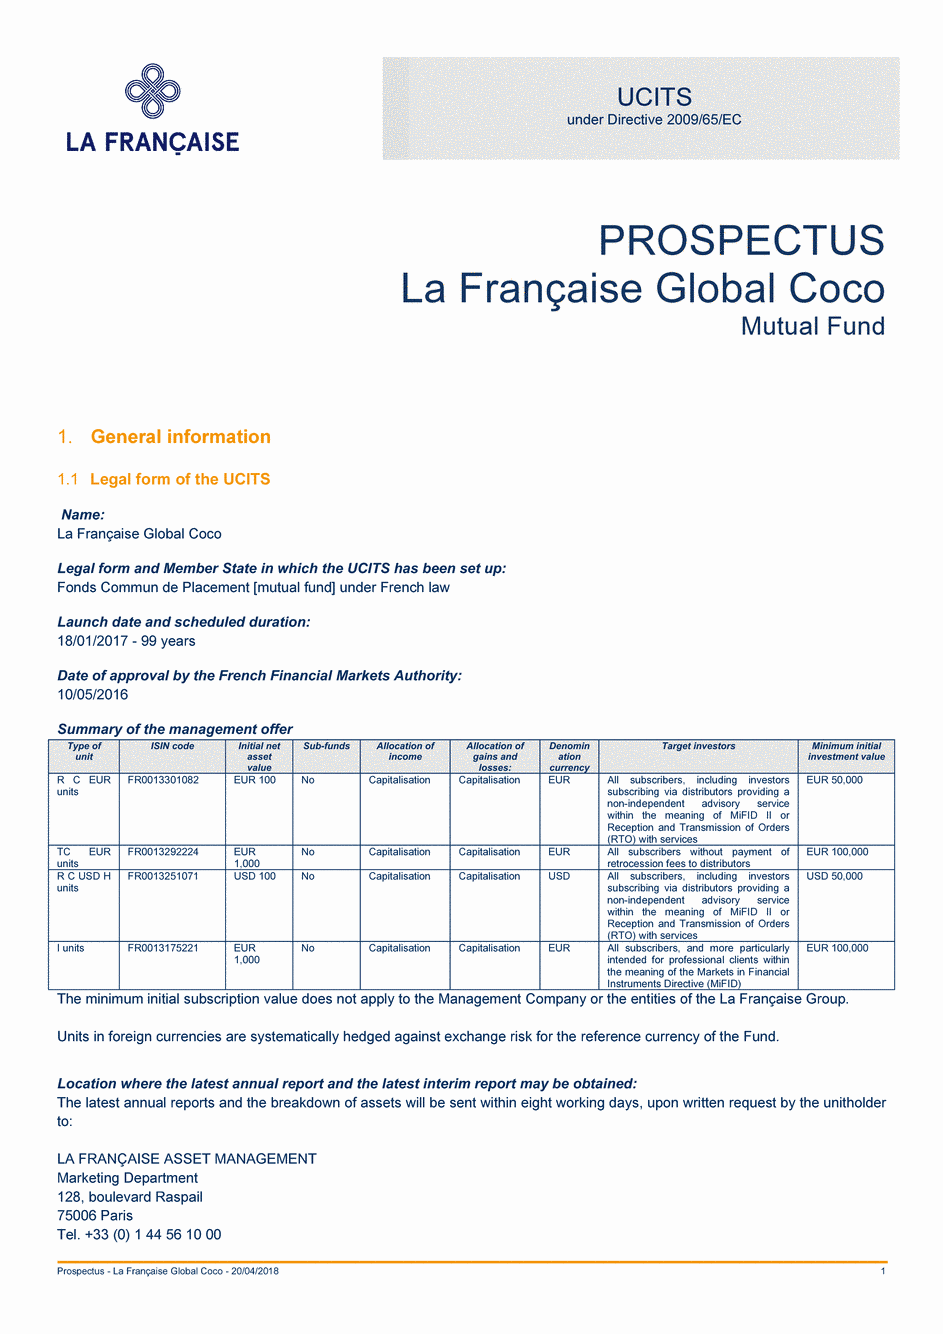 Prospectus La Française Global Coco - Part R C EUR - 20/04/2018 - Anglais